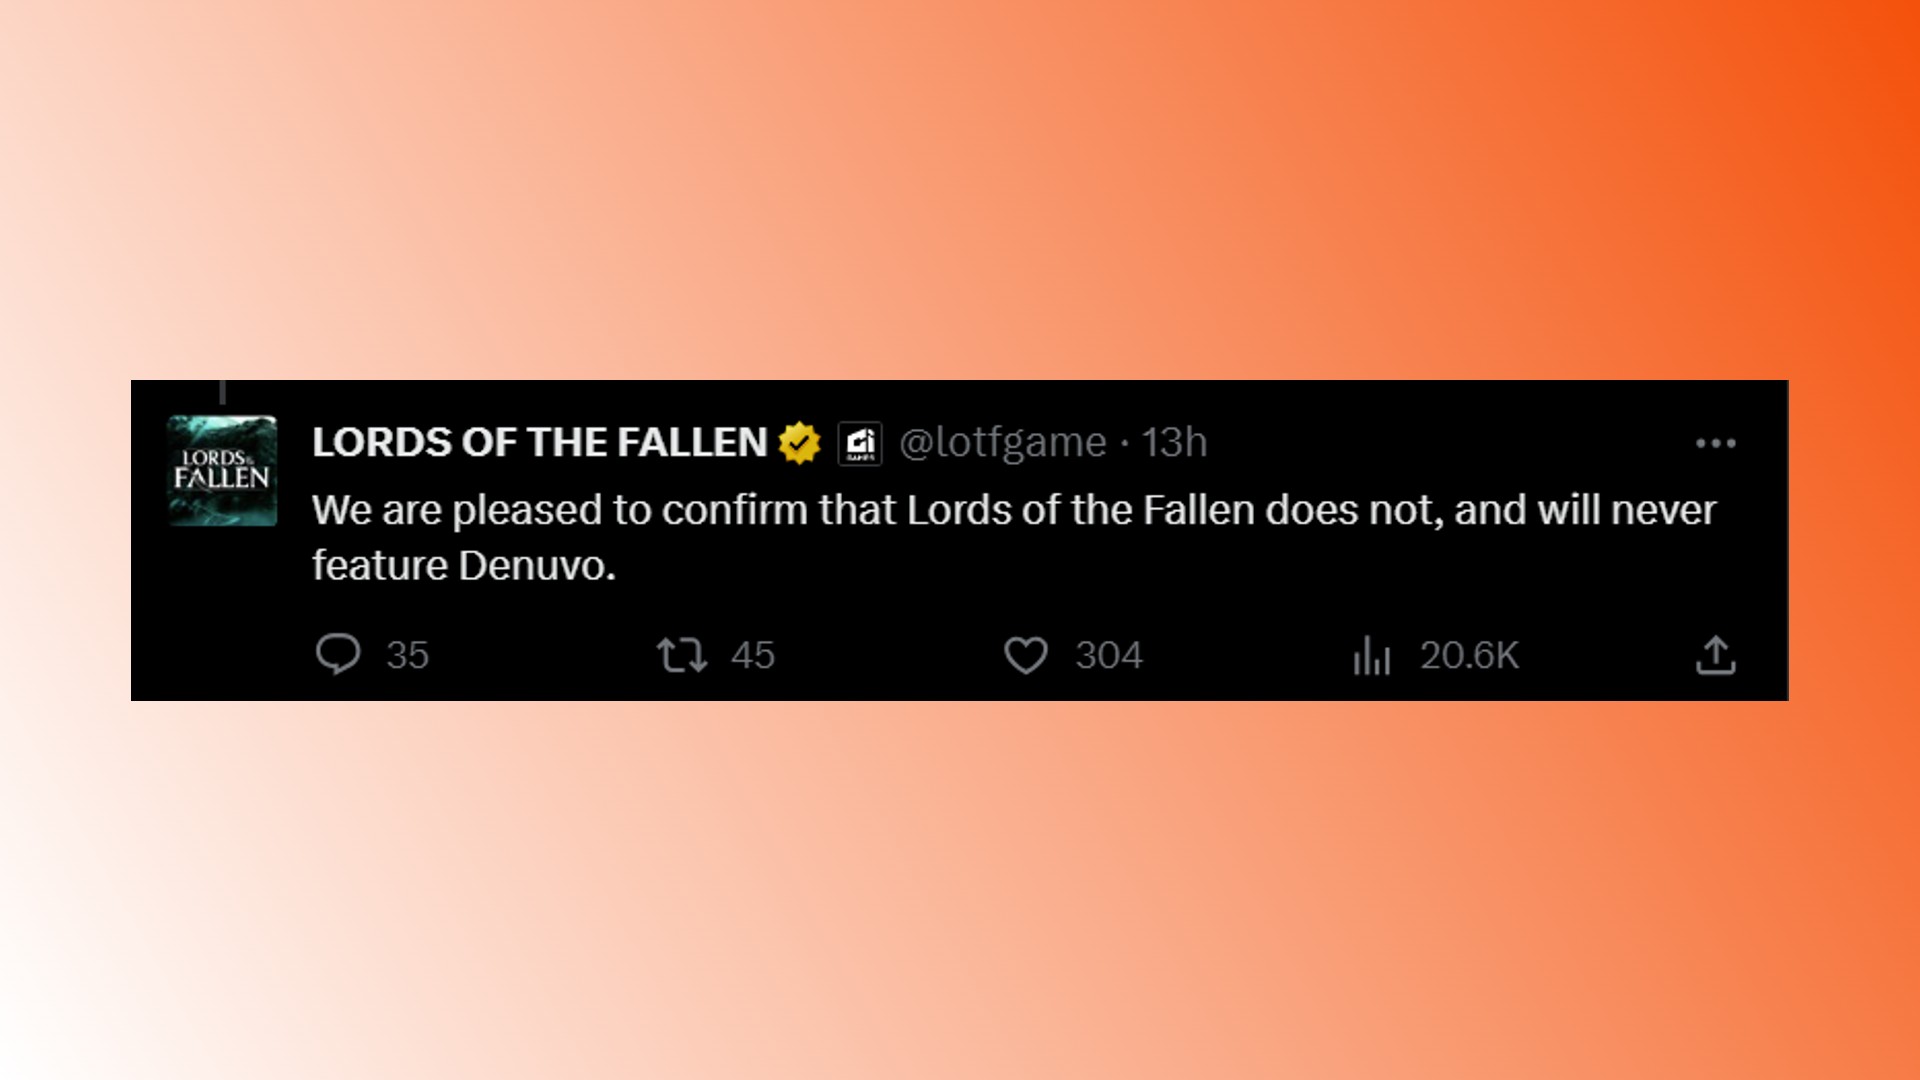 Lords of the Fallen Denuvo: Ein Tweet des RPG-Spieleentwicklers Hexworks bezüglich Denuvo in Lords of the Fallen